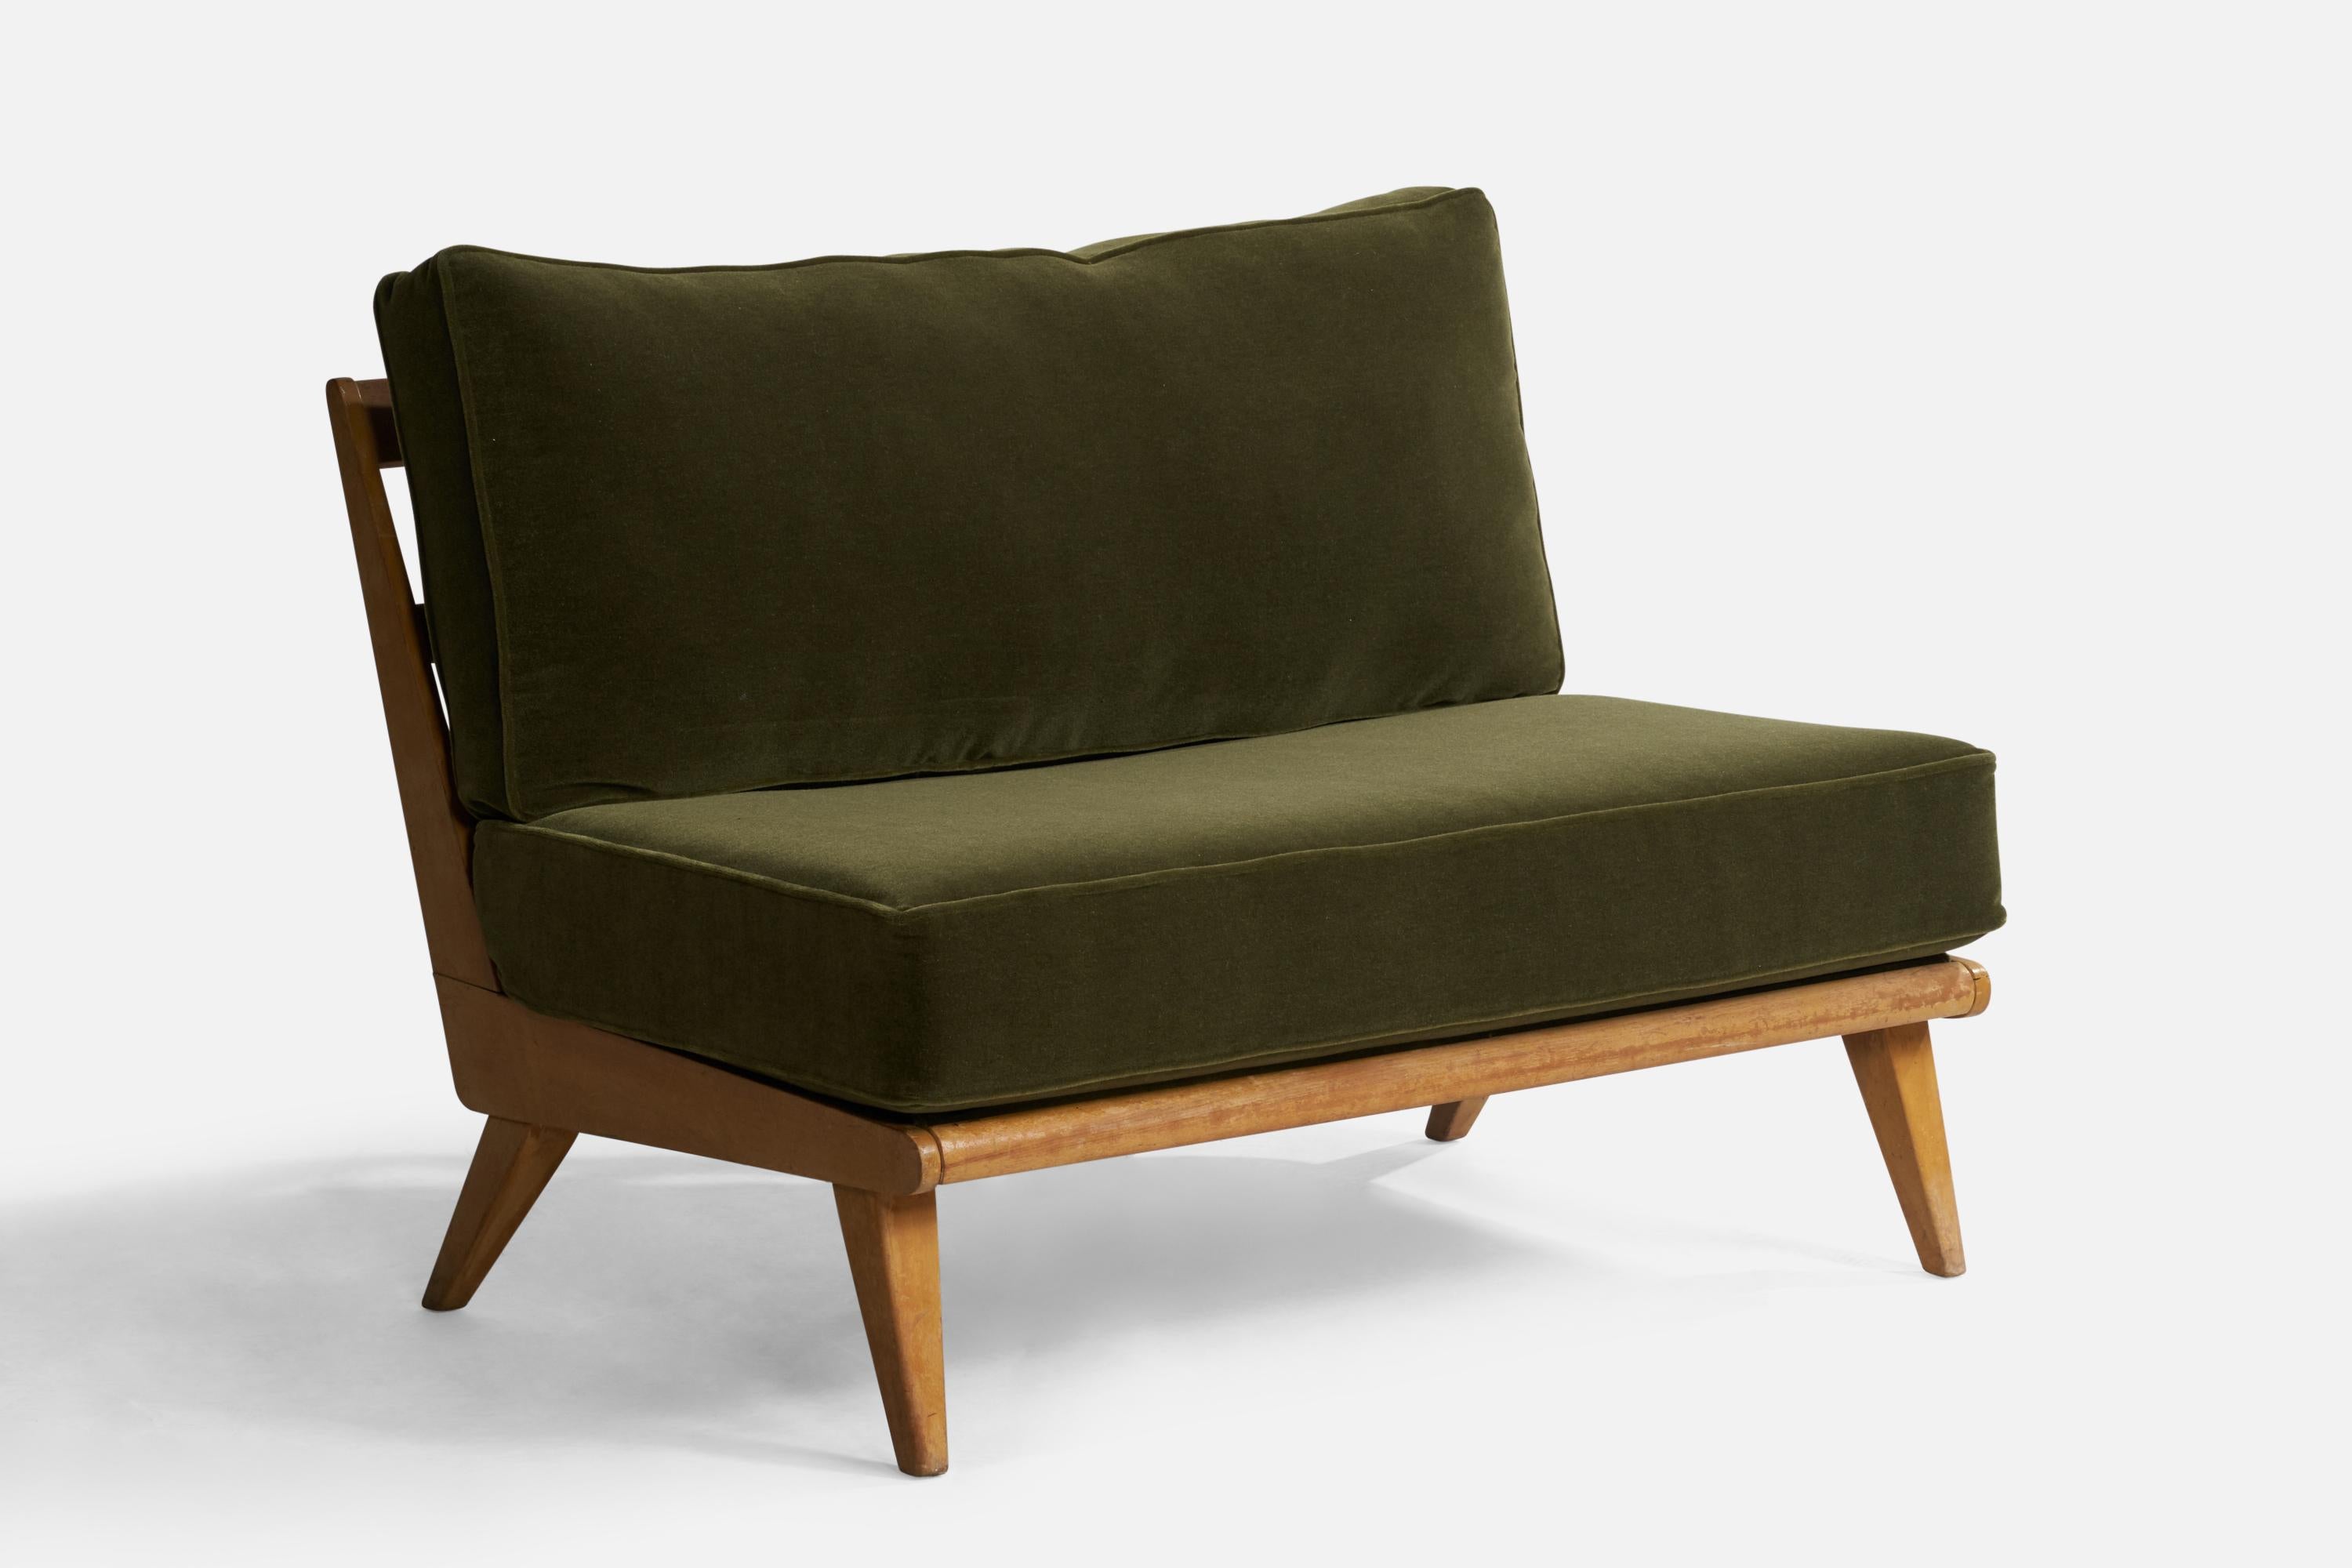 Ein Sofa aus Ahornholz und grünem Mohairstoff, entworfen und hergestellt von Heywood Wakefield, USA, 1950er Jahre.

Sitzhöhe 18,5